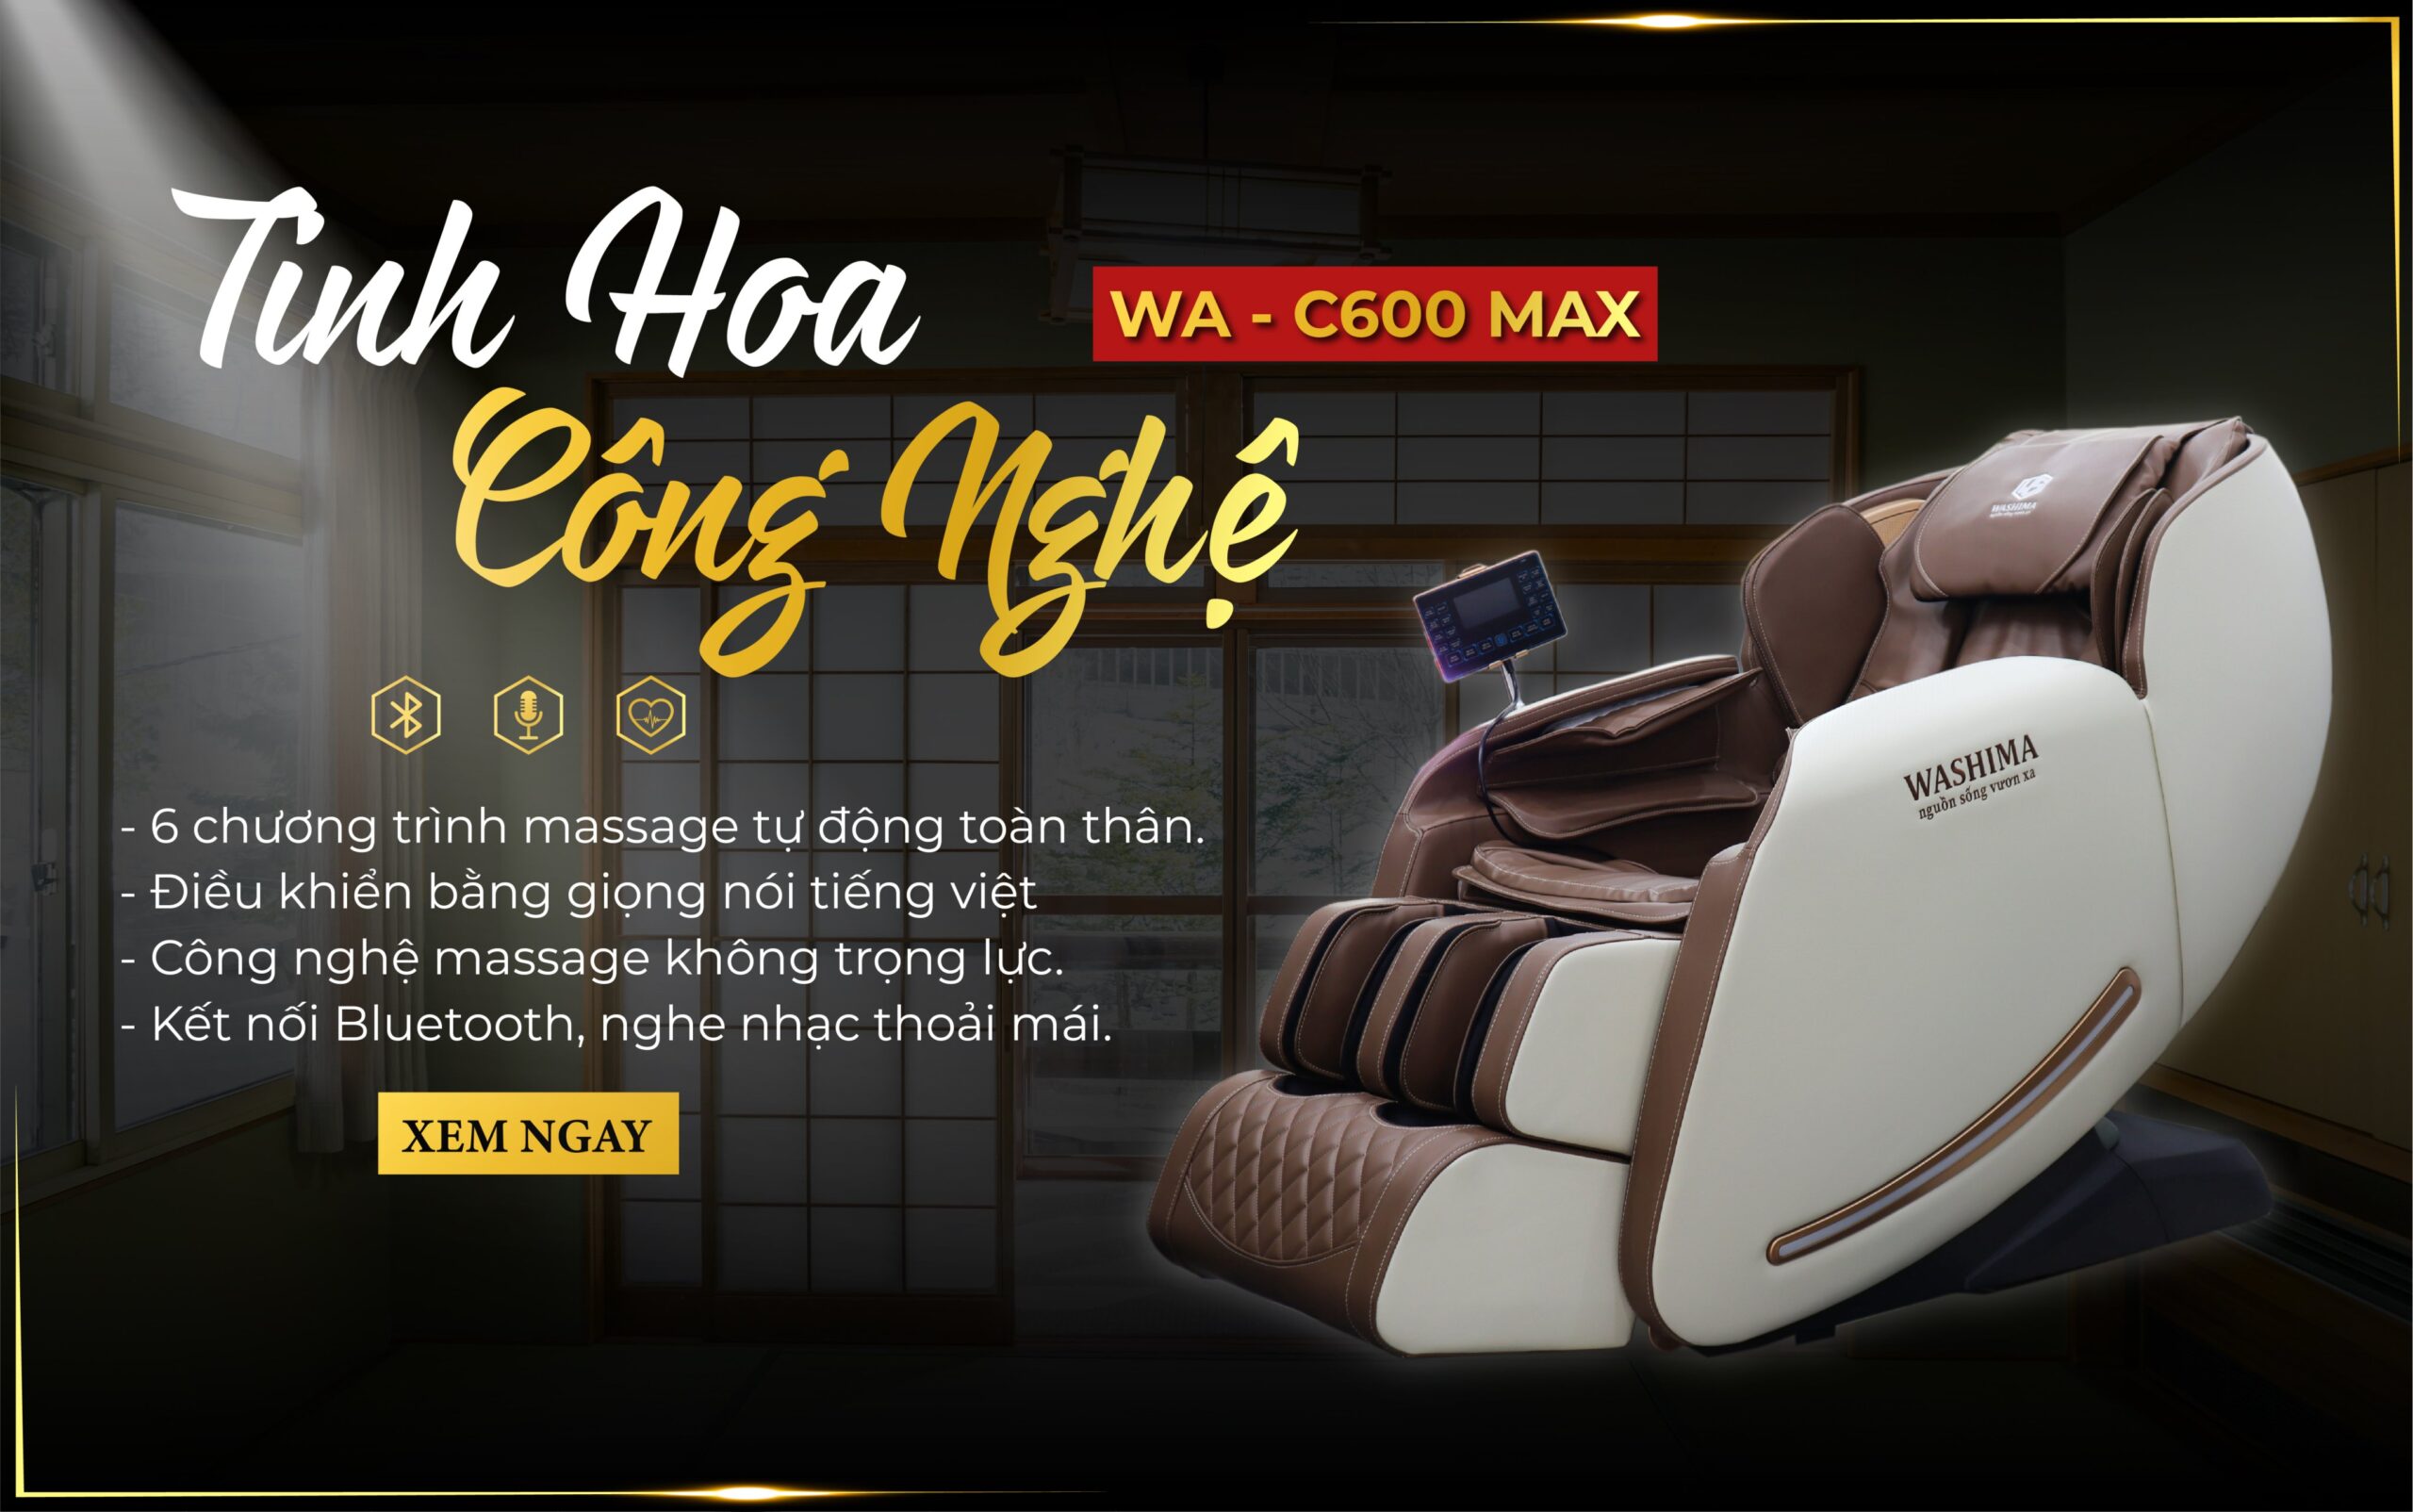 Ghế massage WA-C600 MAX tinh hoa công nghệ